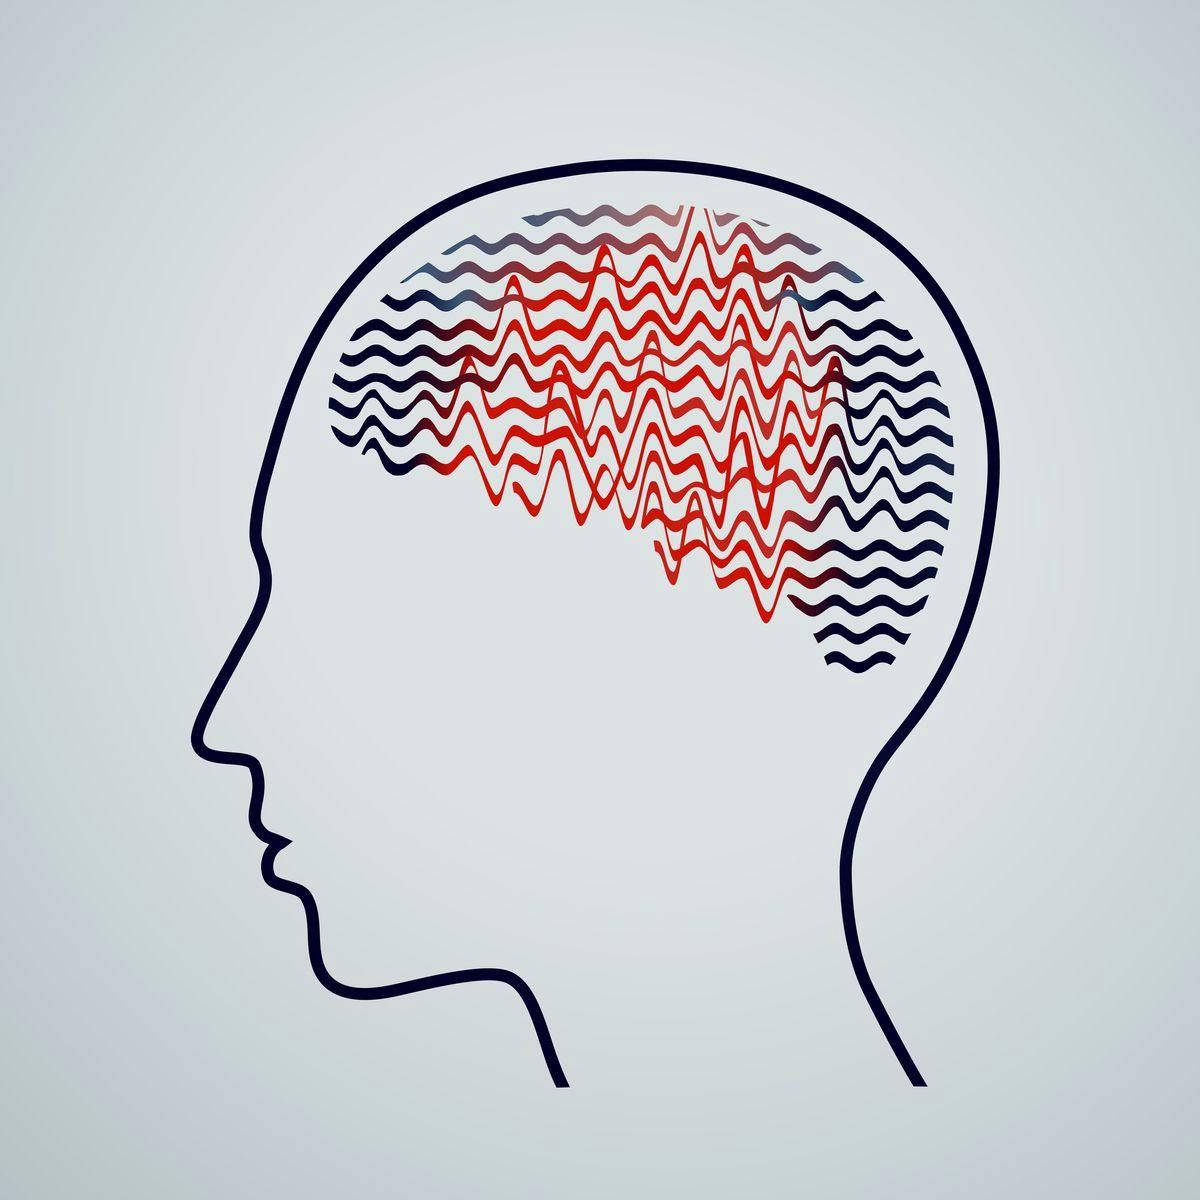 brain epilepsy image 